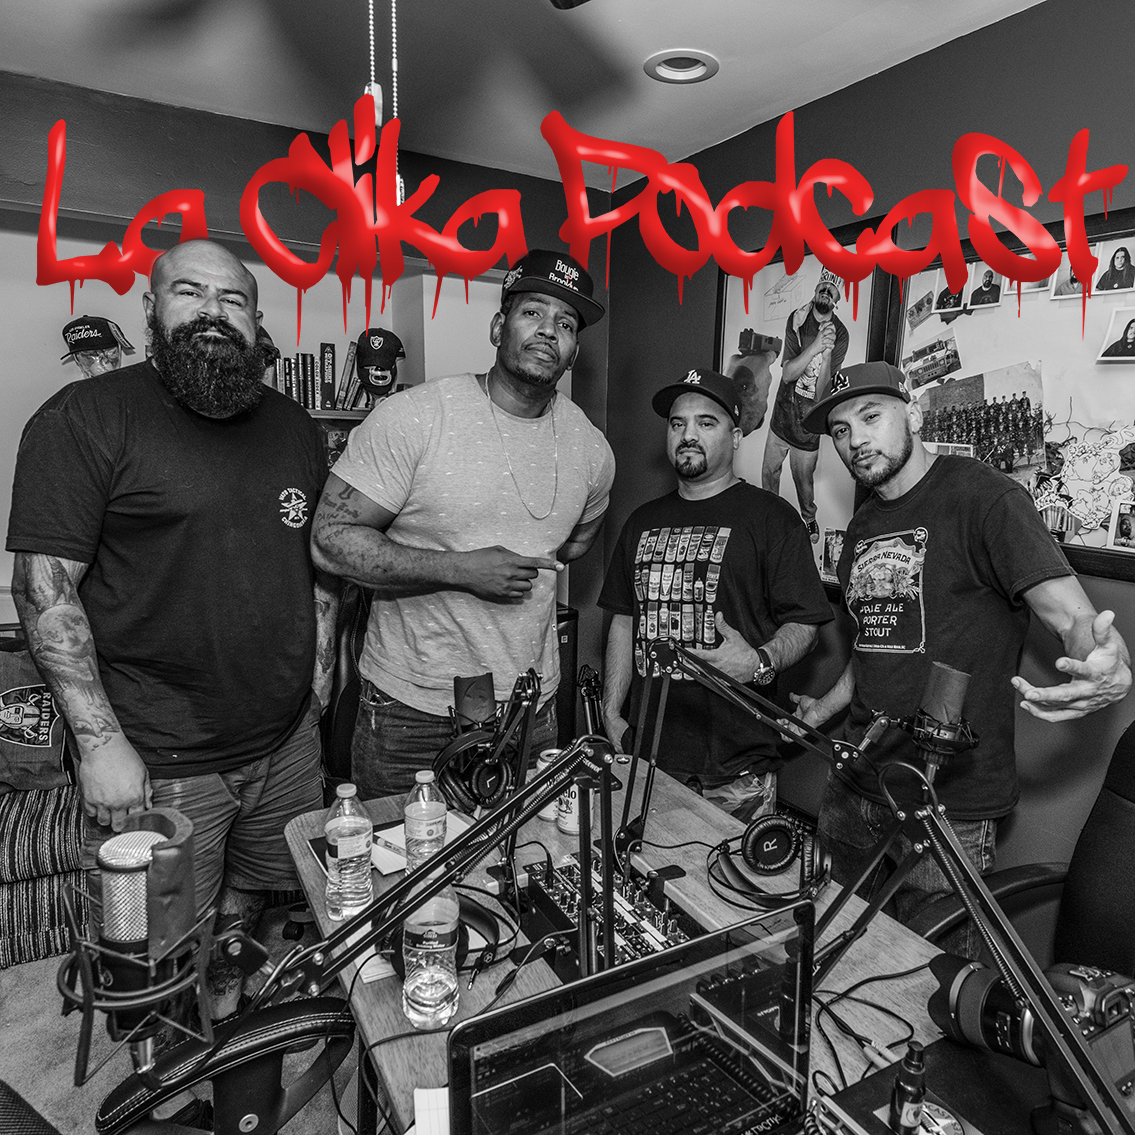 Episode #23 La Clika Podcast with DJ Rather Unique